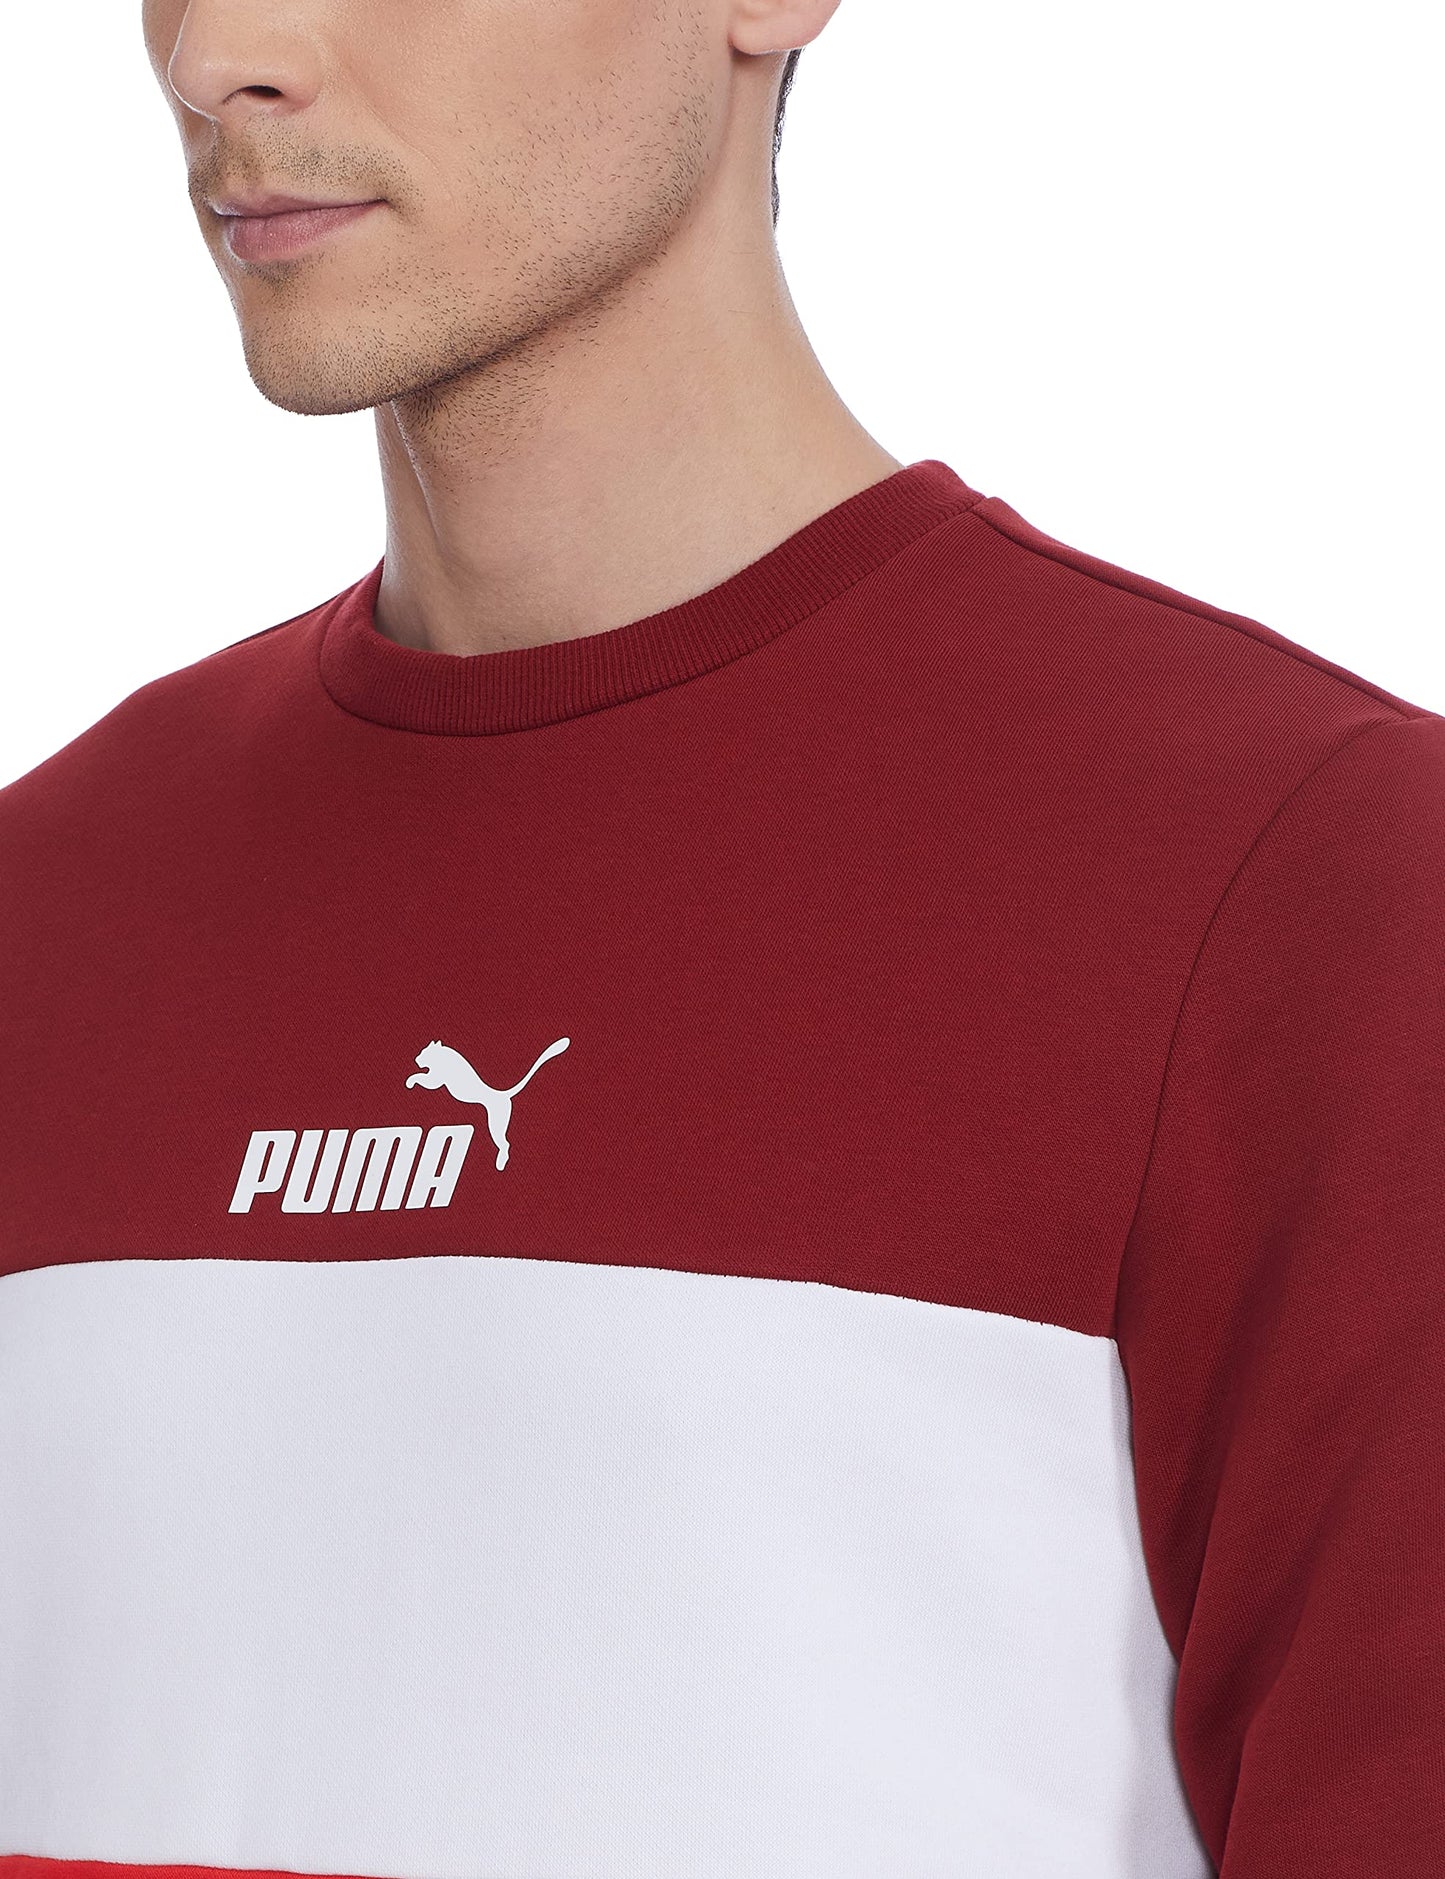 Puma Men's Cotton Essentials+ Crew Neck Sweatshirts (Red)